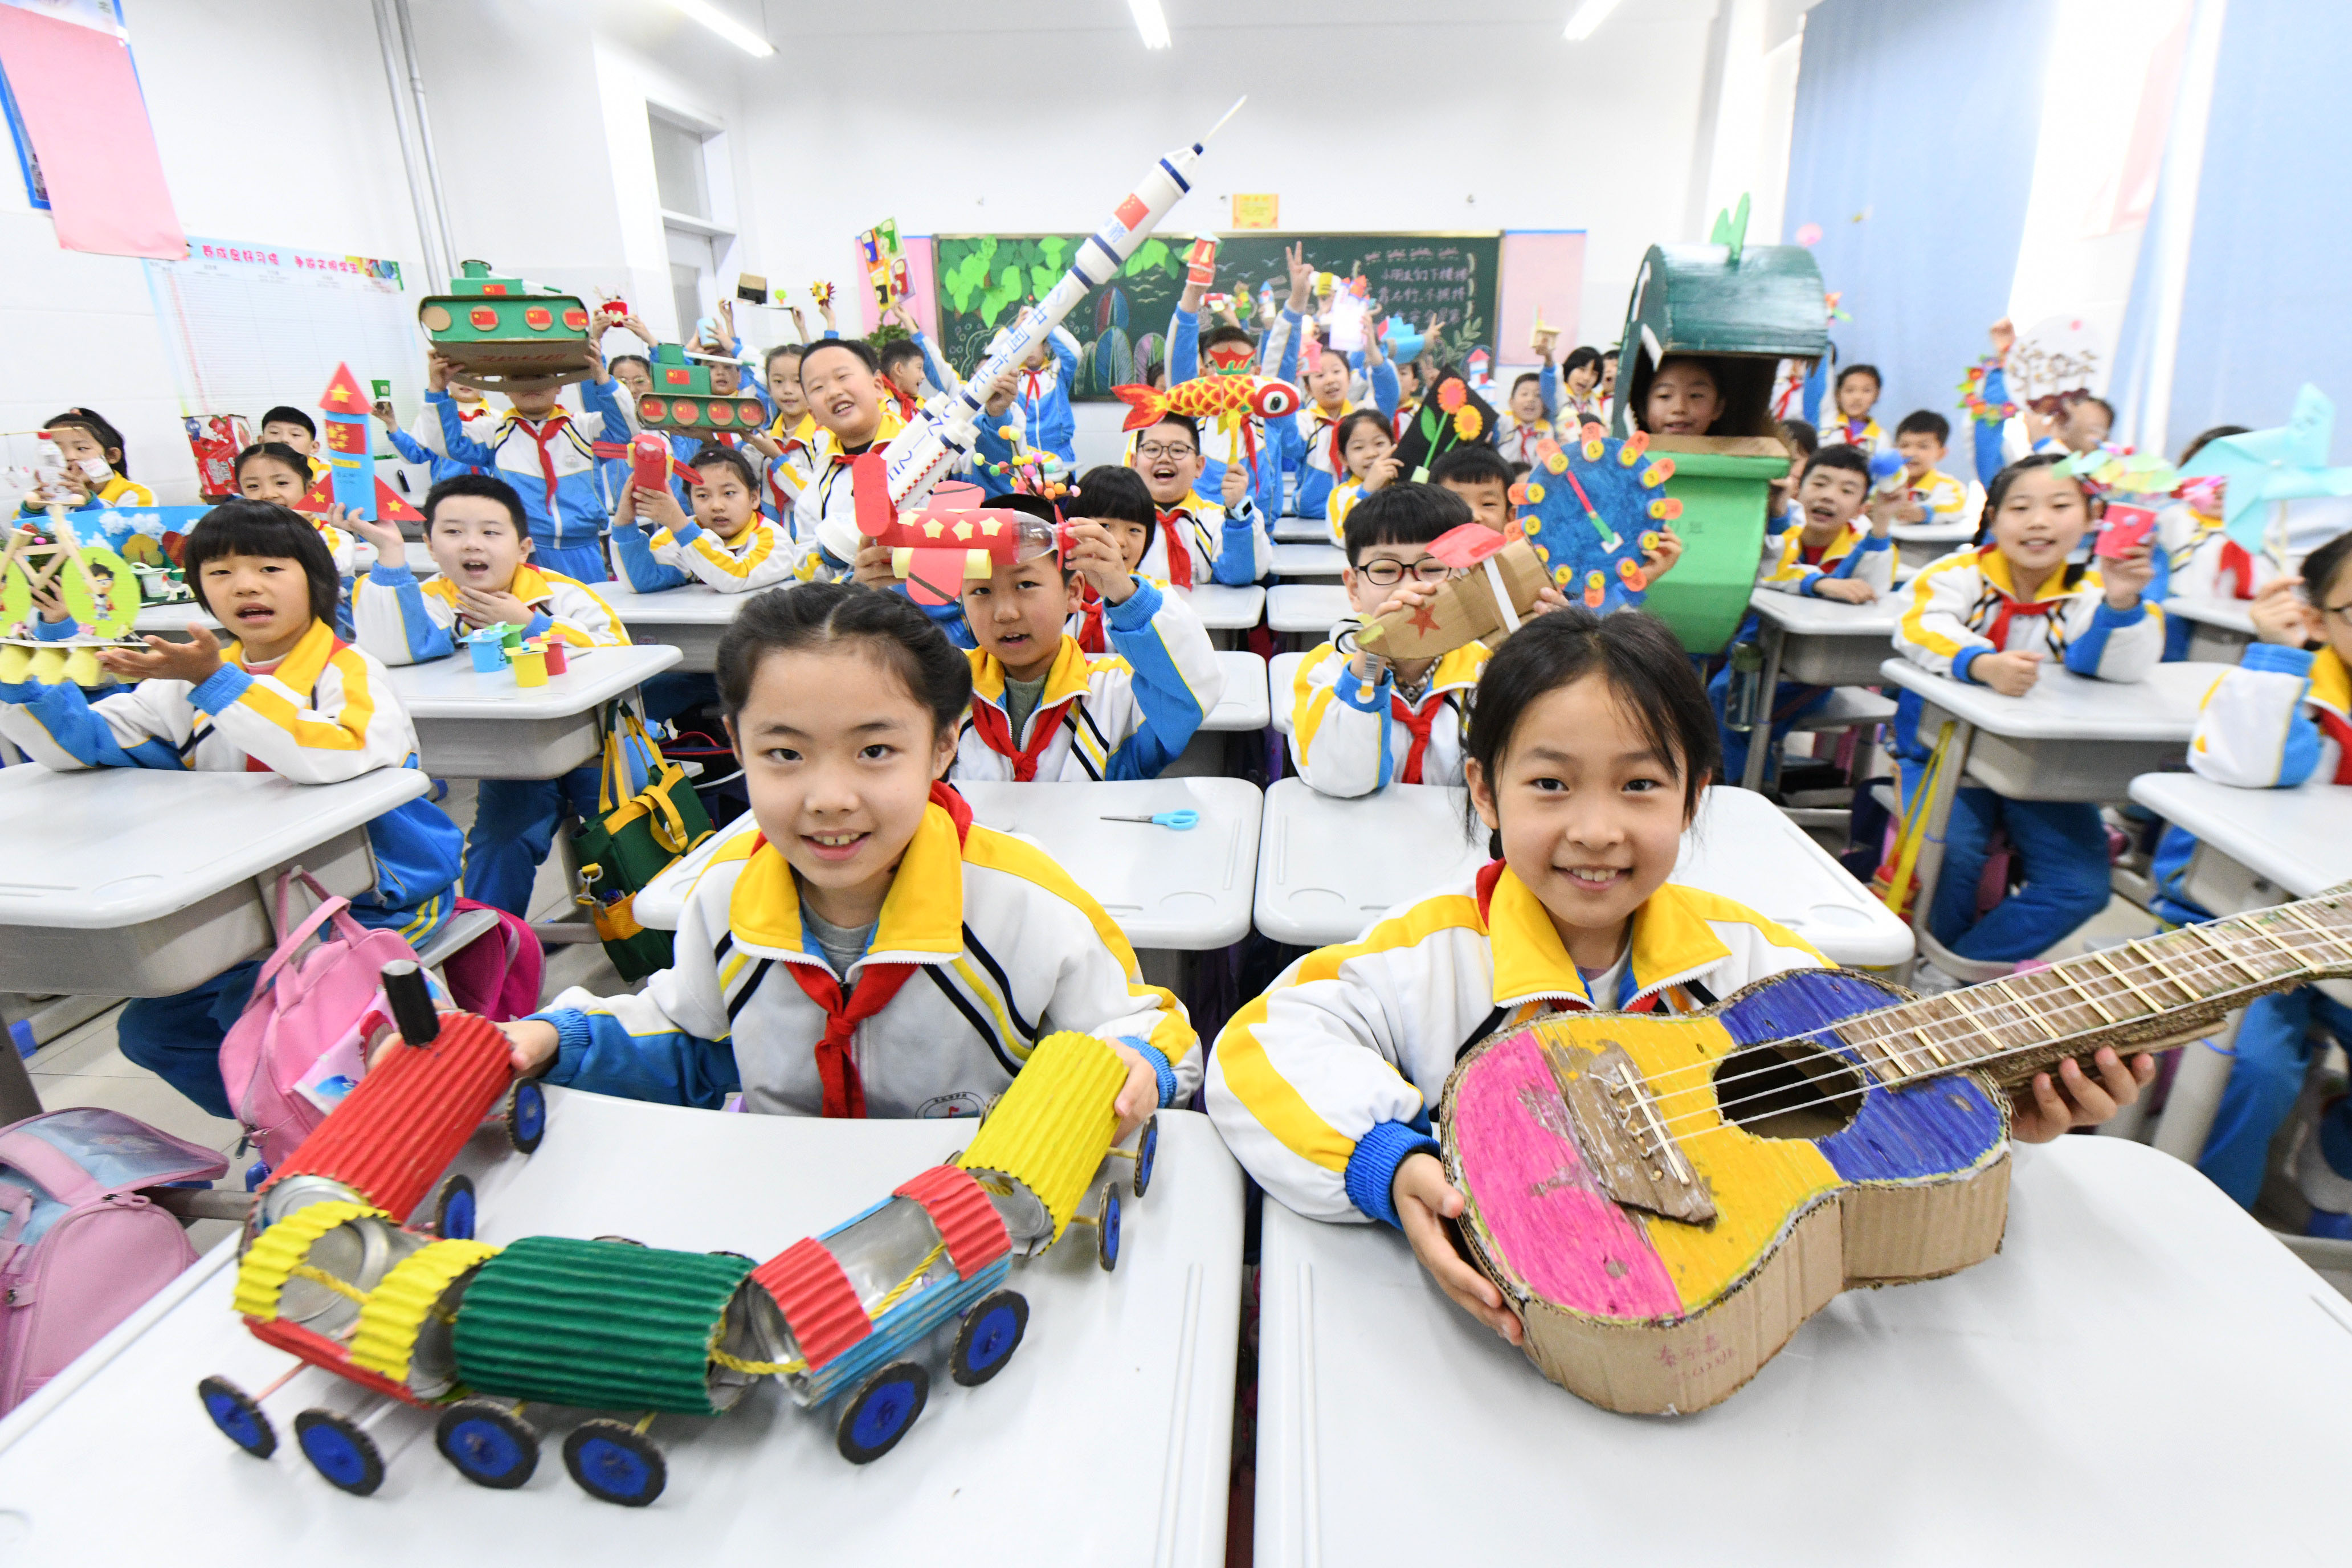 10月31日，河北省石家庄新乐市东长寿学校小学生展示利用废旧物品制作的手工作品。 贾敏杰摄